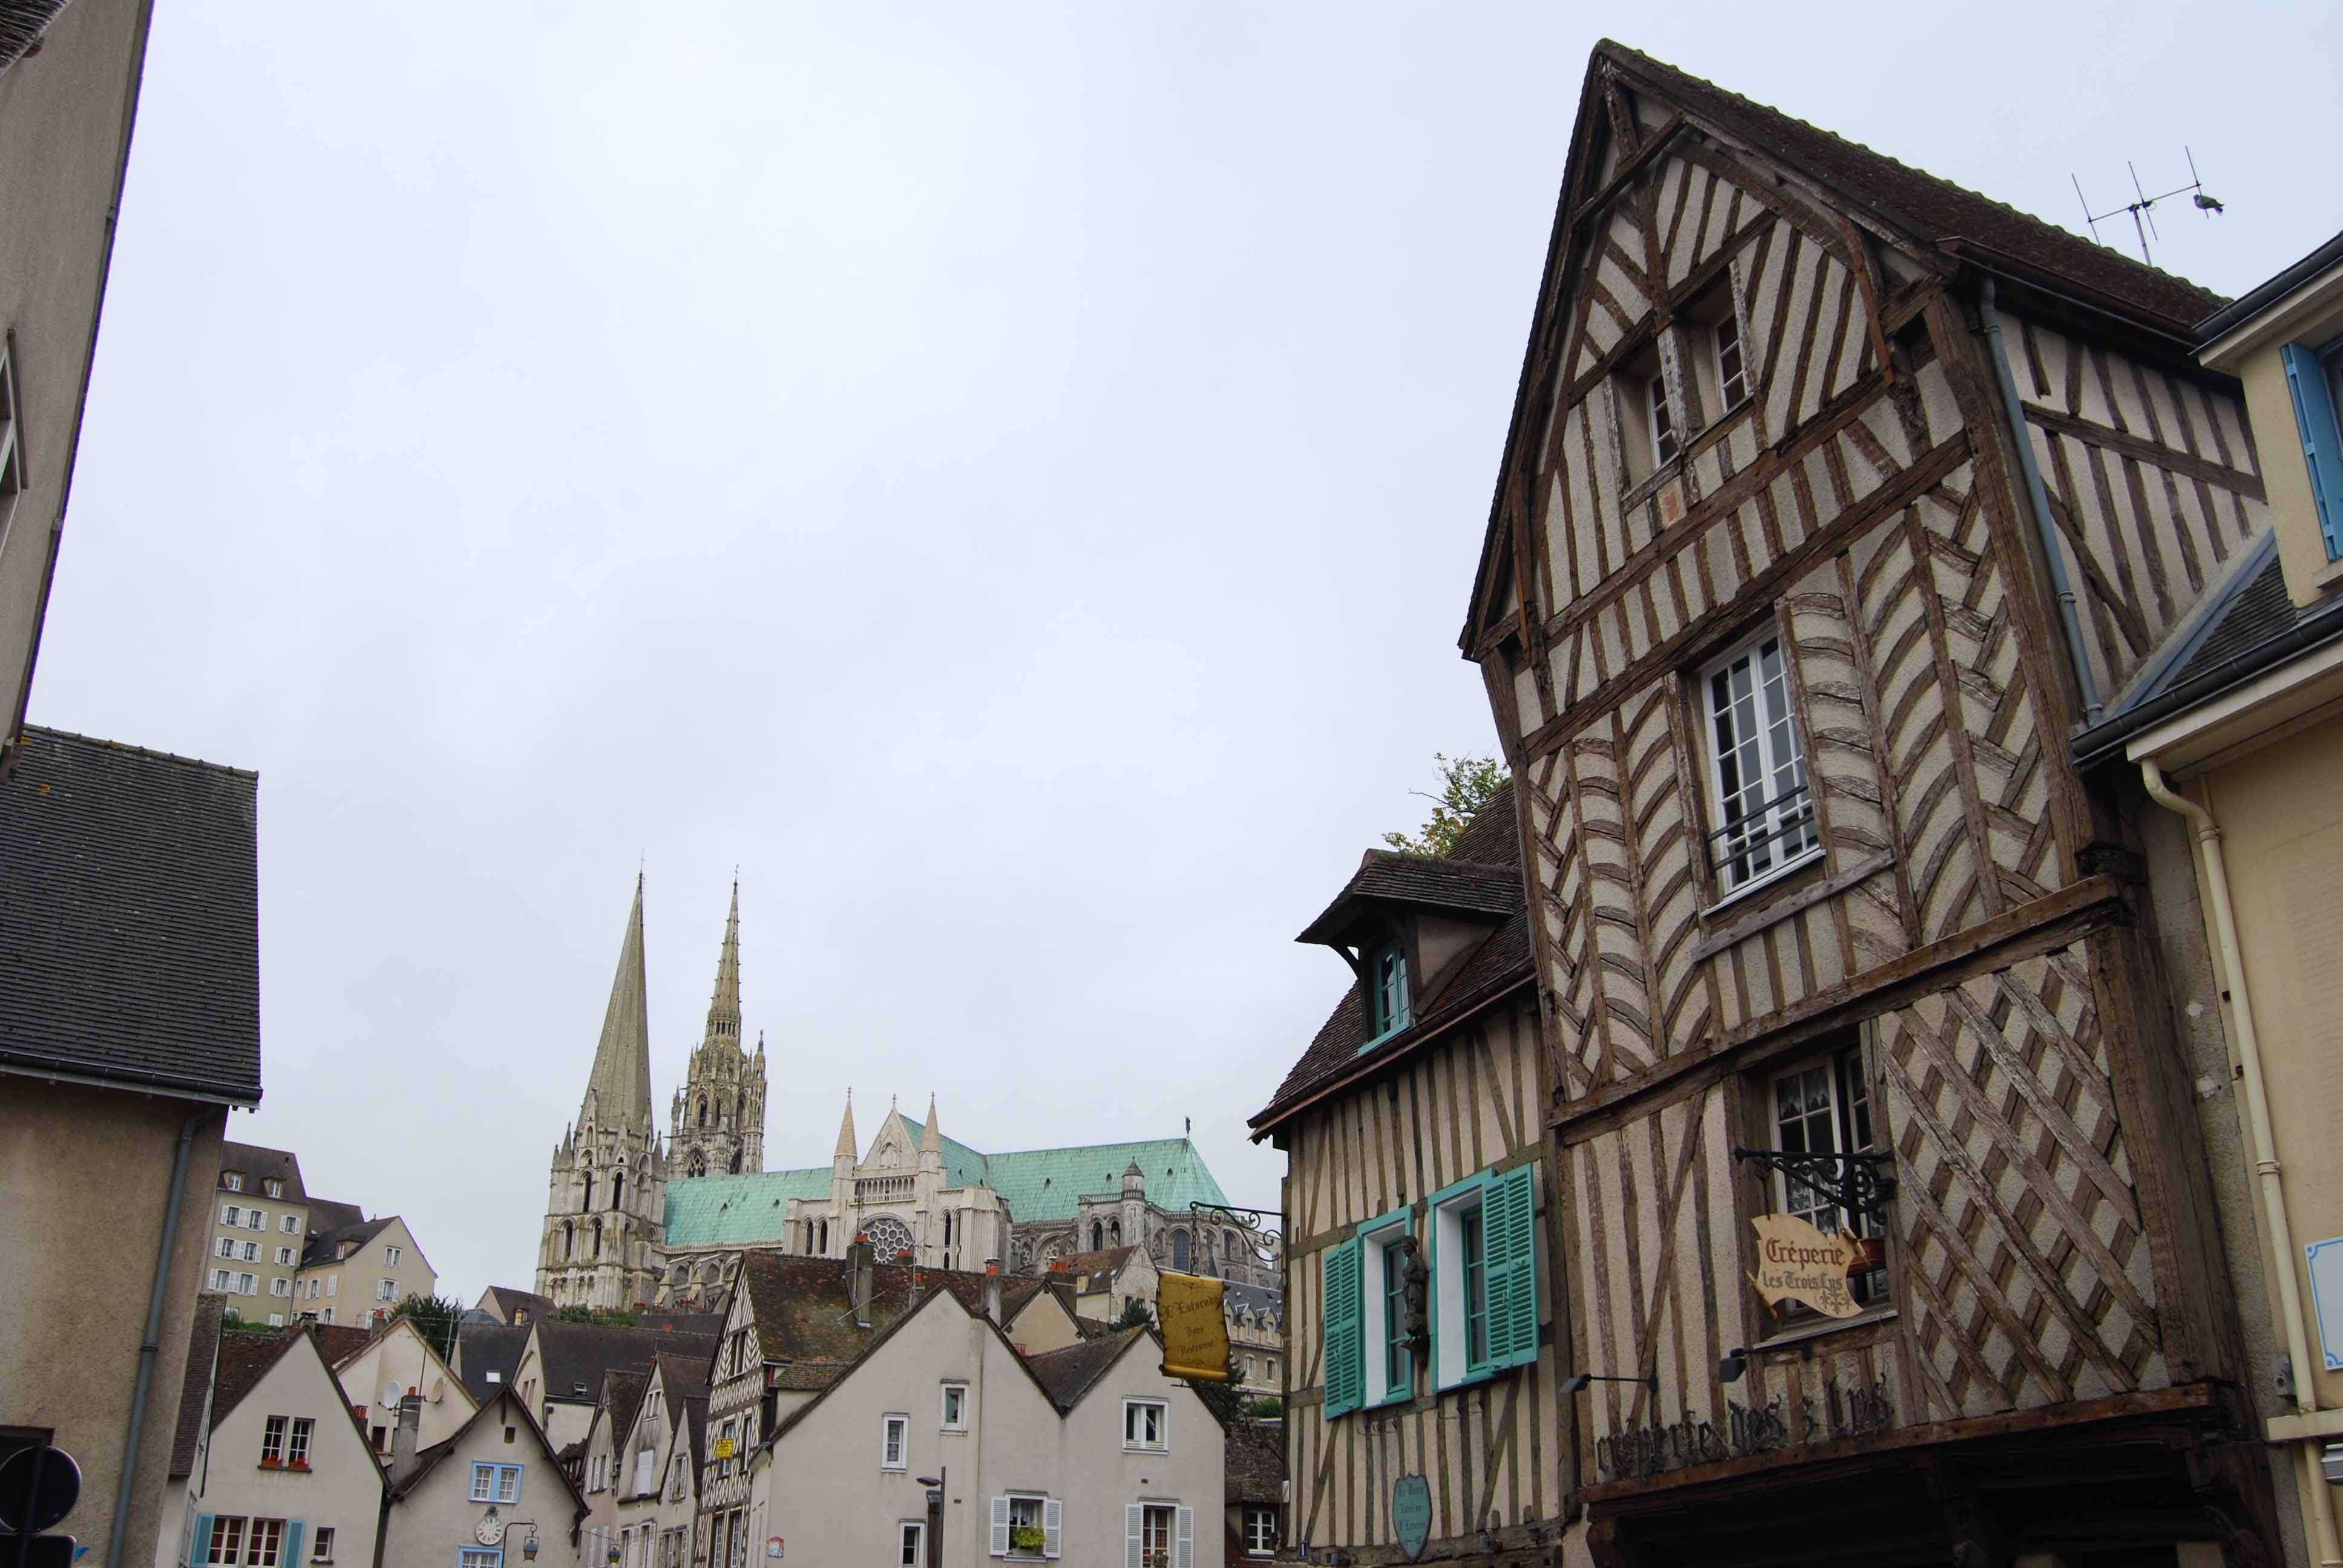 Chartres. Acceso, Alojamiento, Restaurantes y Actividades - Chartres: Arte, espiritualidad y esoterismo. (3)